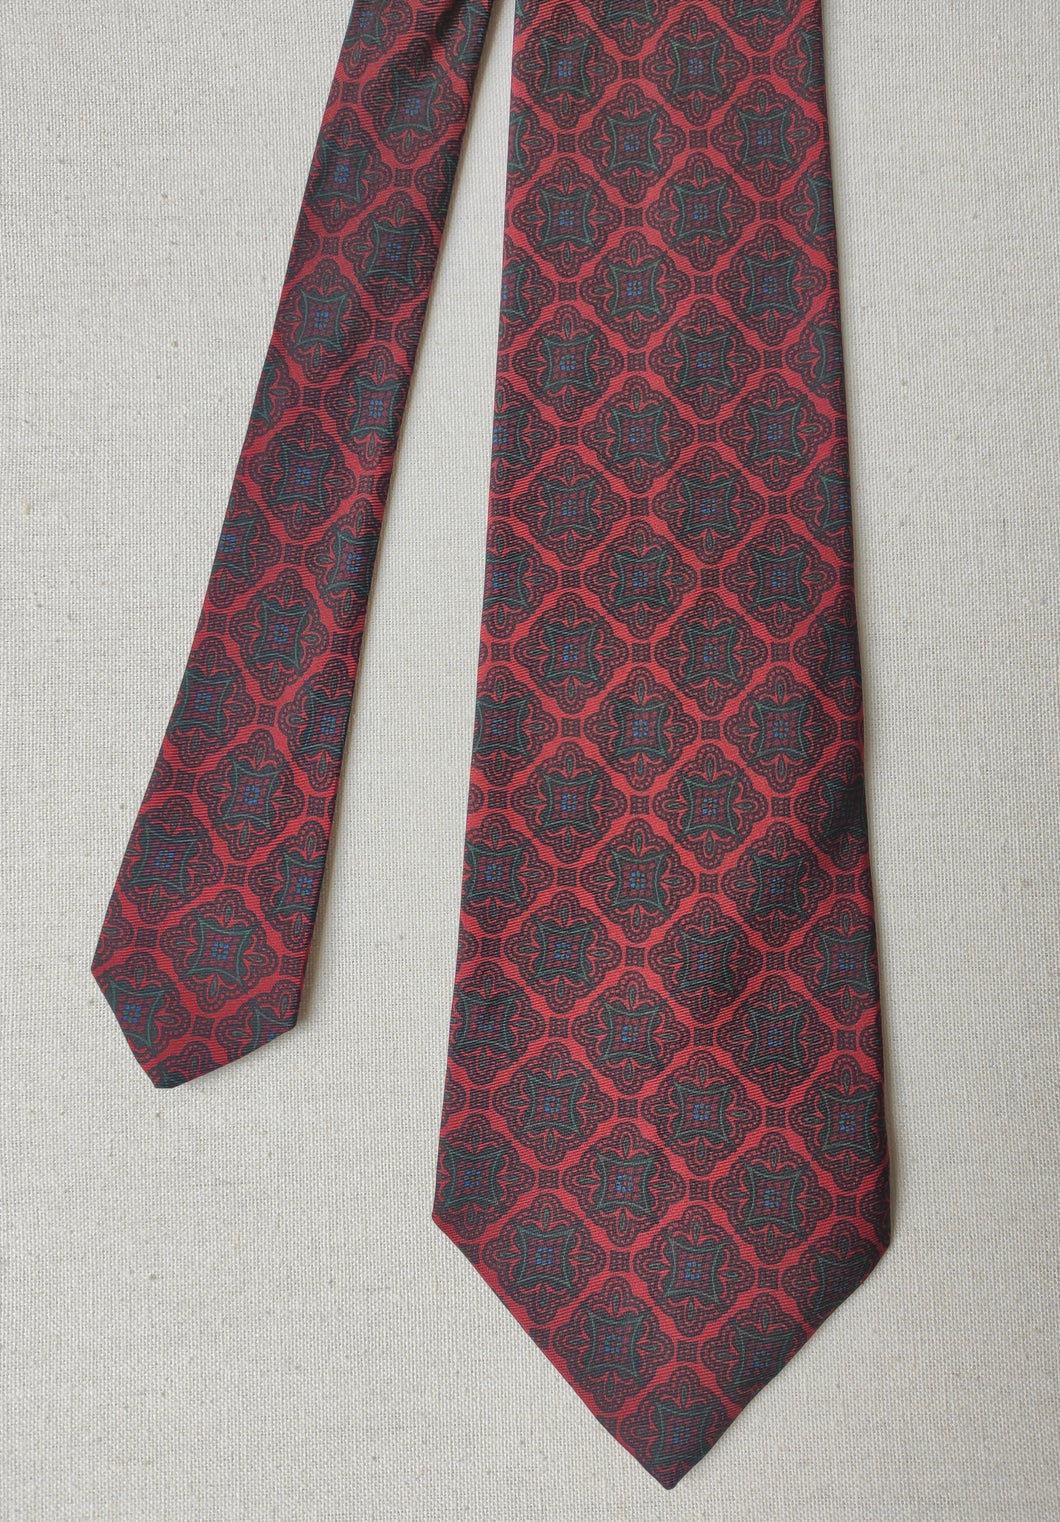 De Paz Bologna cravate vintage rouge en soie Made in Italy